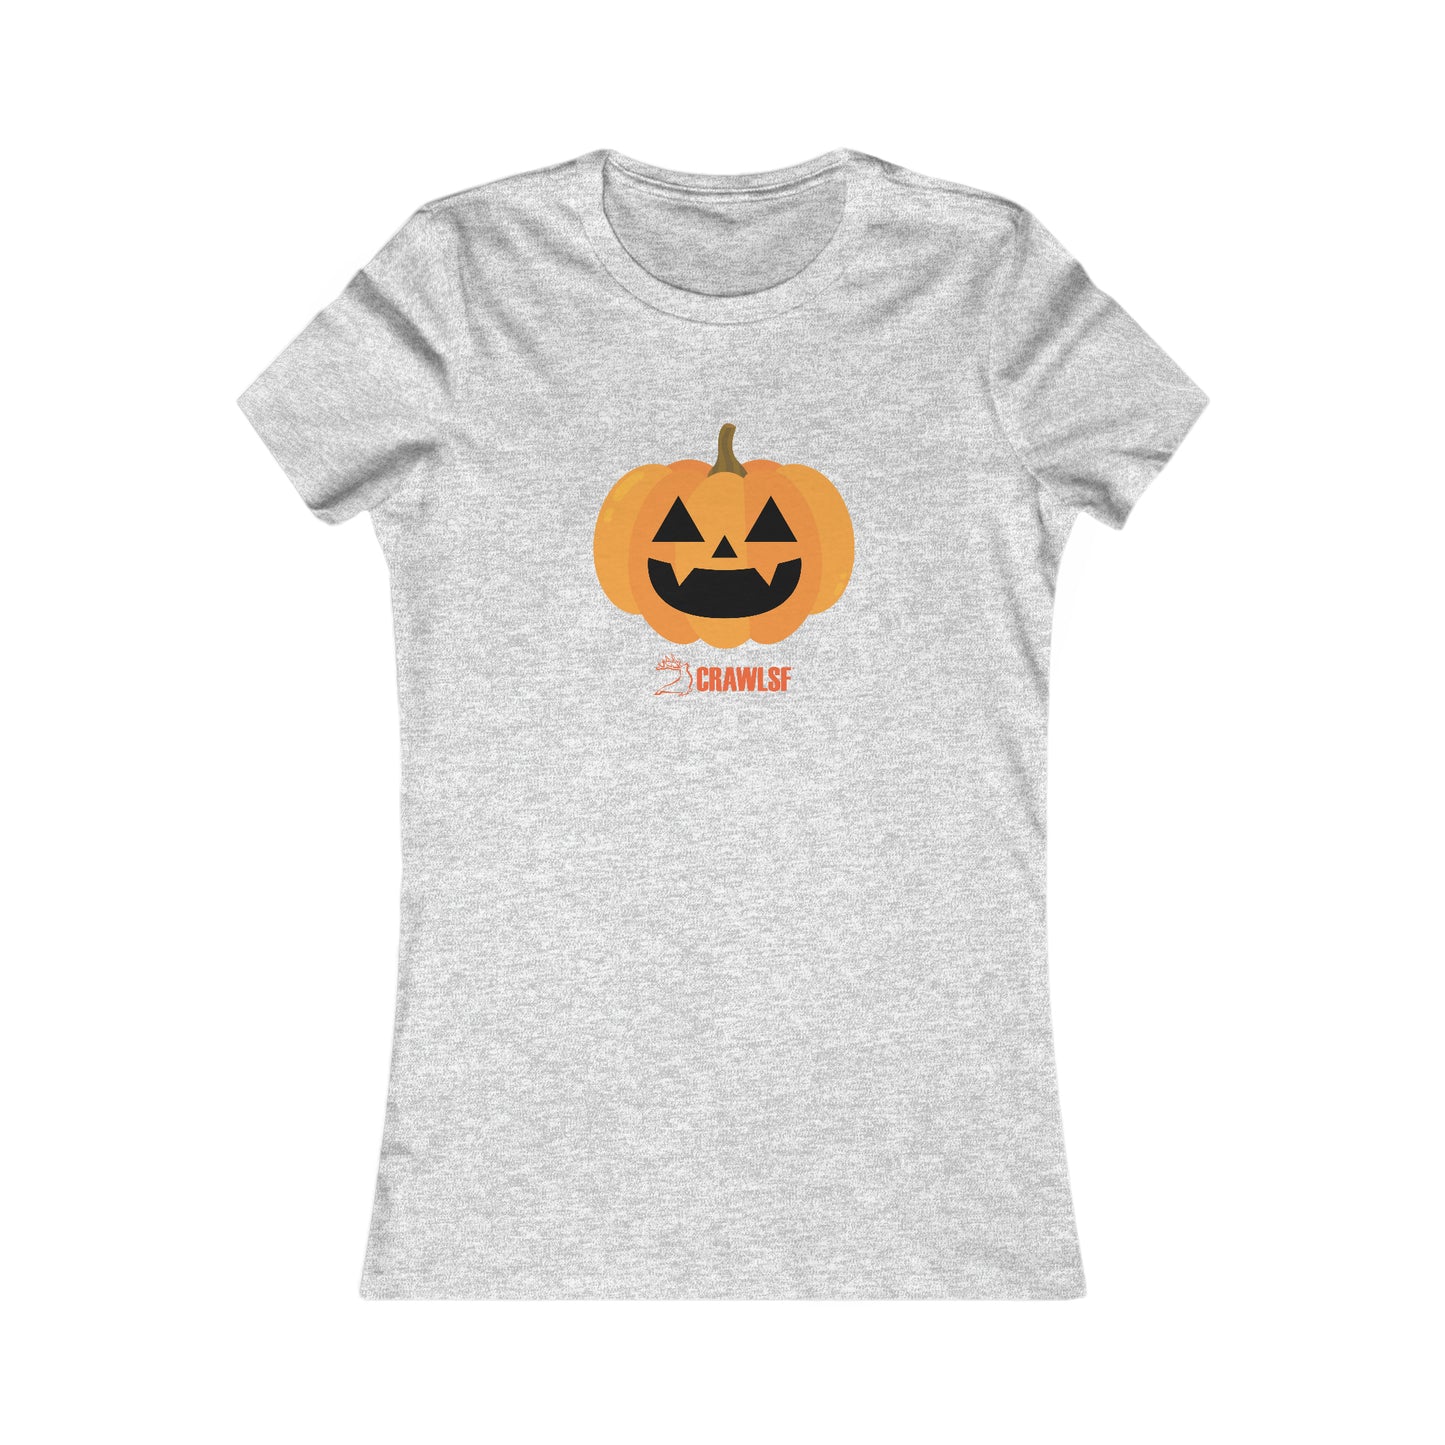 Pumpkin CrawlSF Halloween Tee